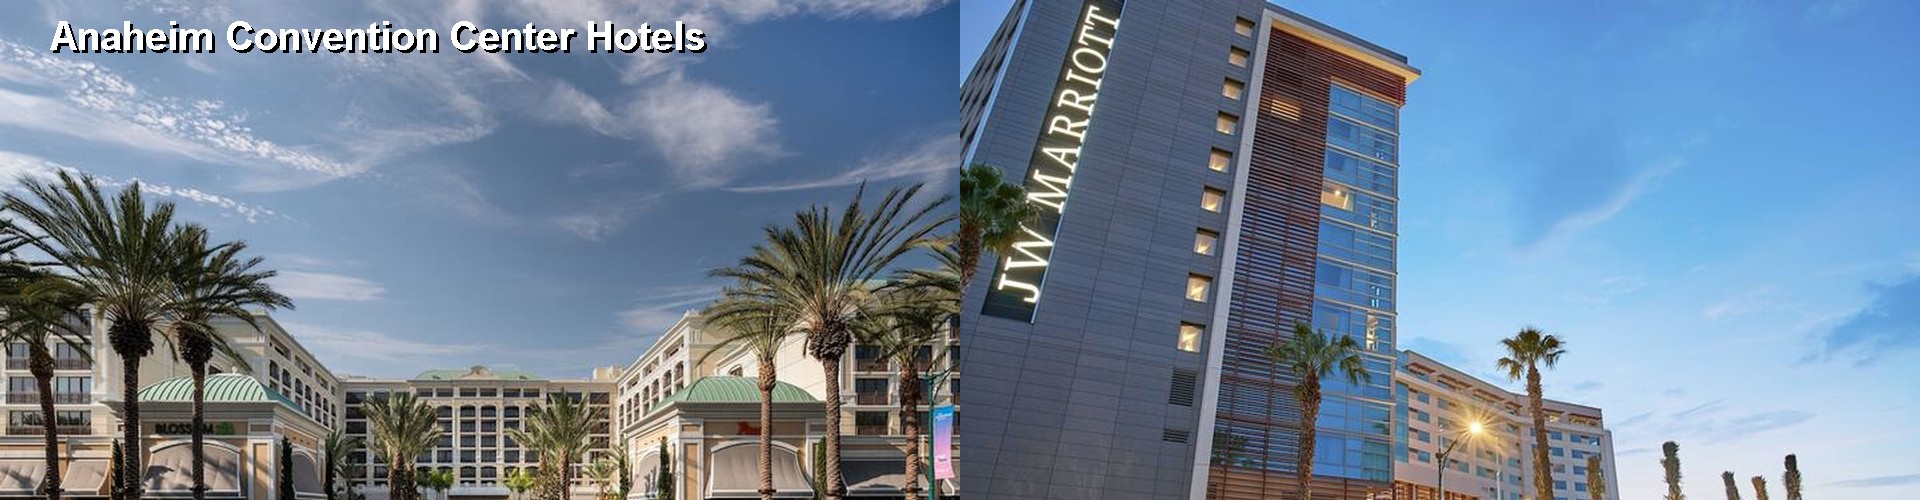 5 Best Hotels near Anaheim Convention Center